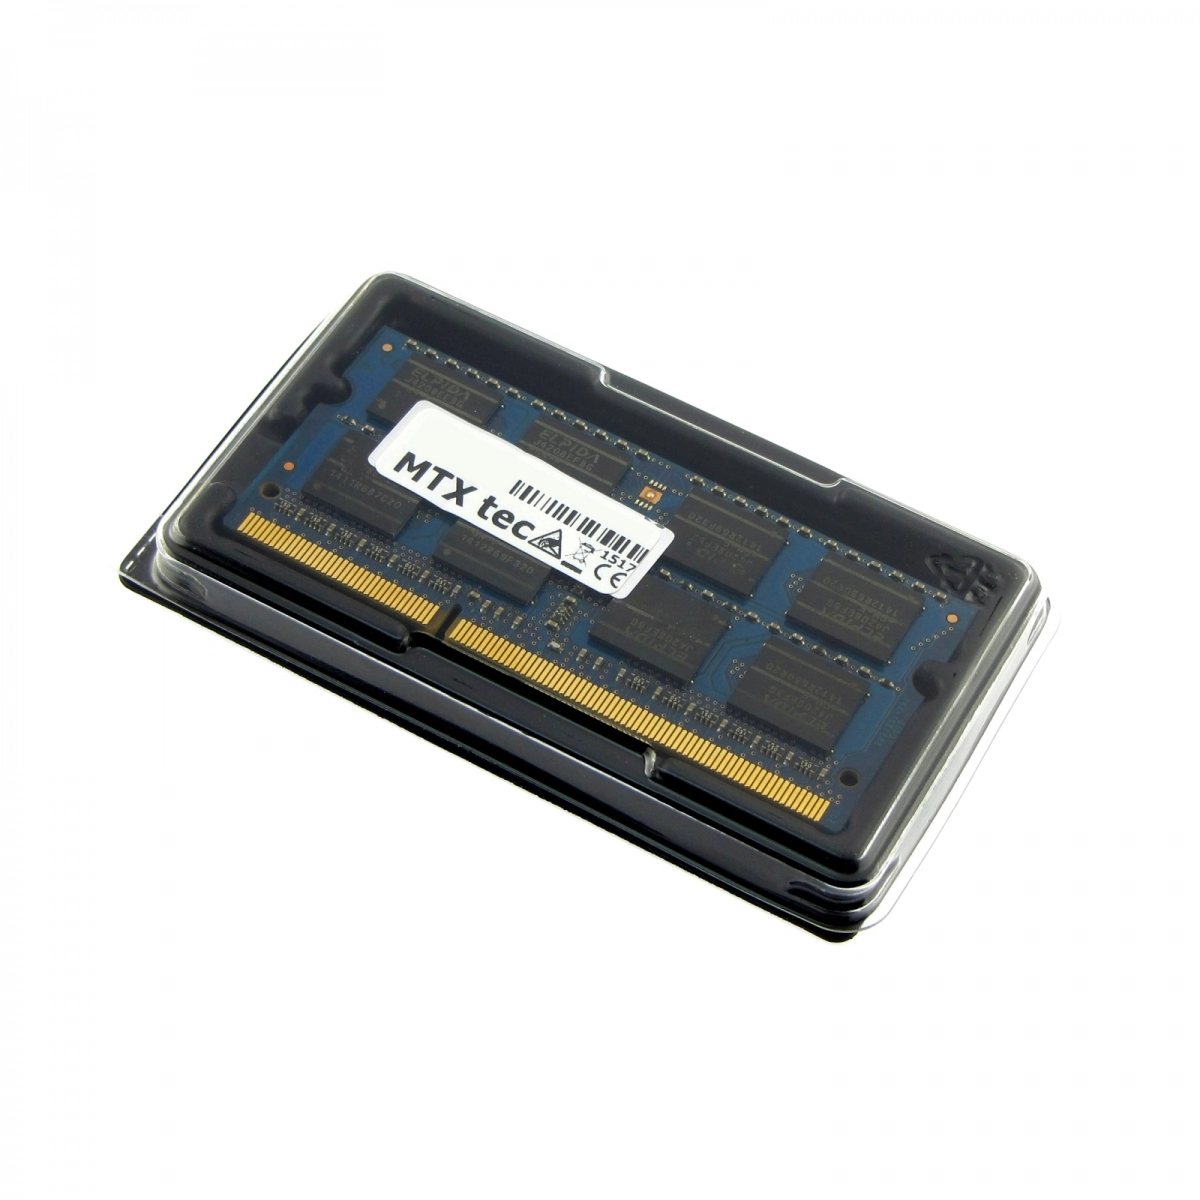 MTXtec Arbeitsspeicher 4 GB RAM für DELL Vostro 3300